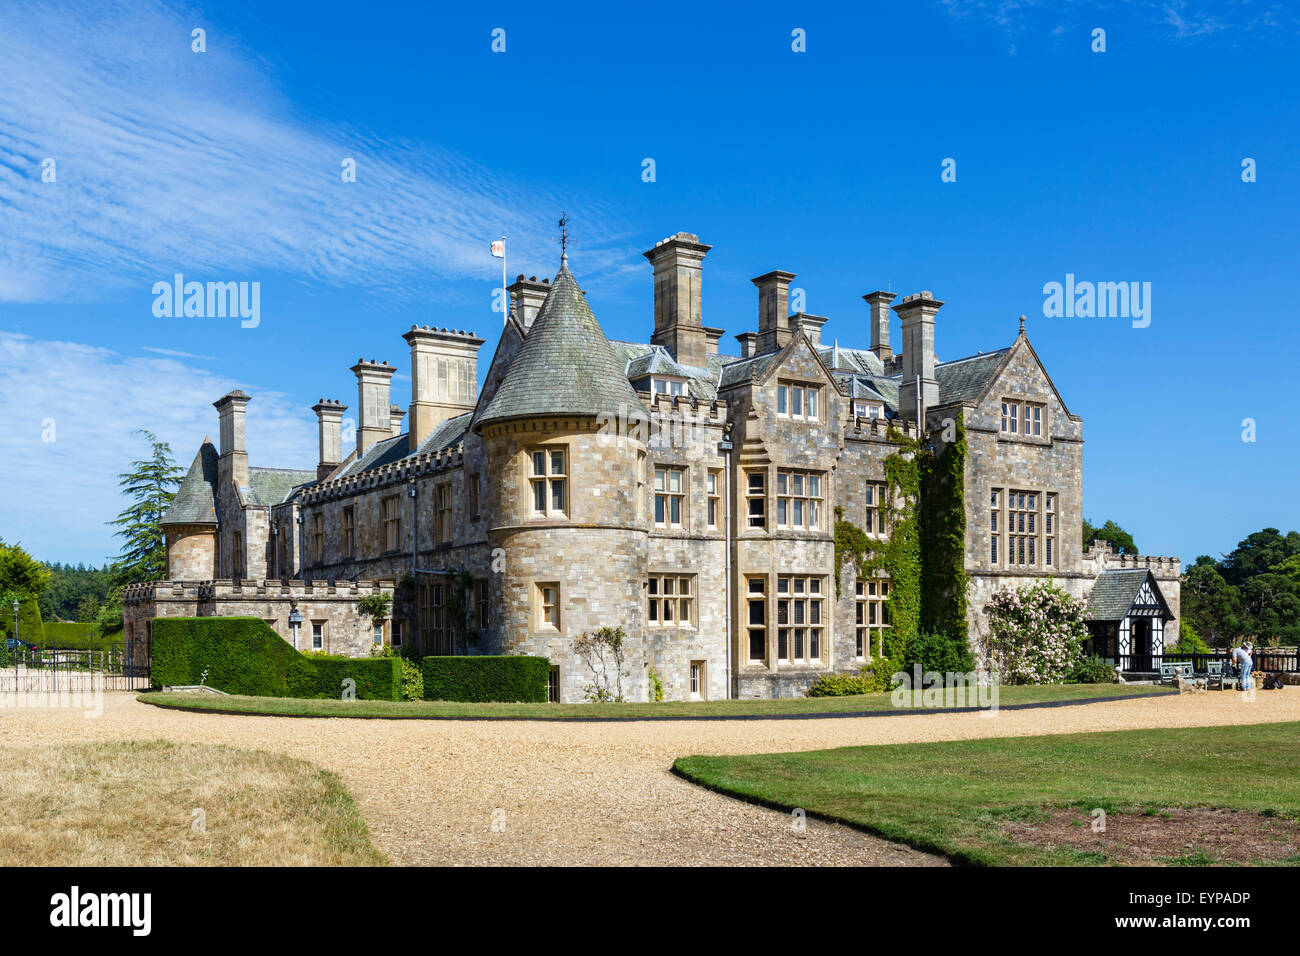 Beaulieu Palace House, accueil des Barons Montagu, Beaulieu, Hampshire, England UK Banque D'Images